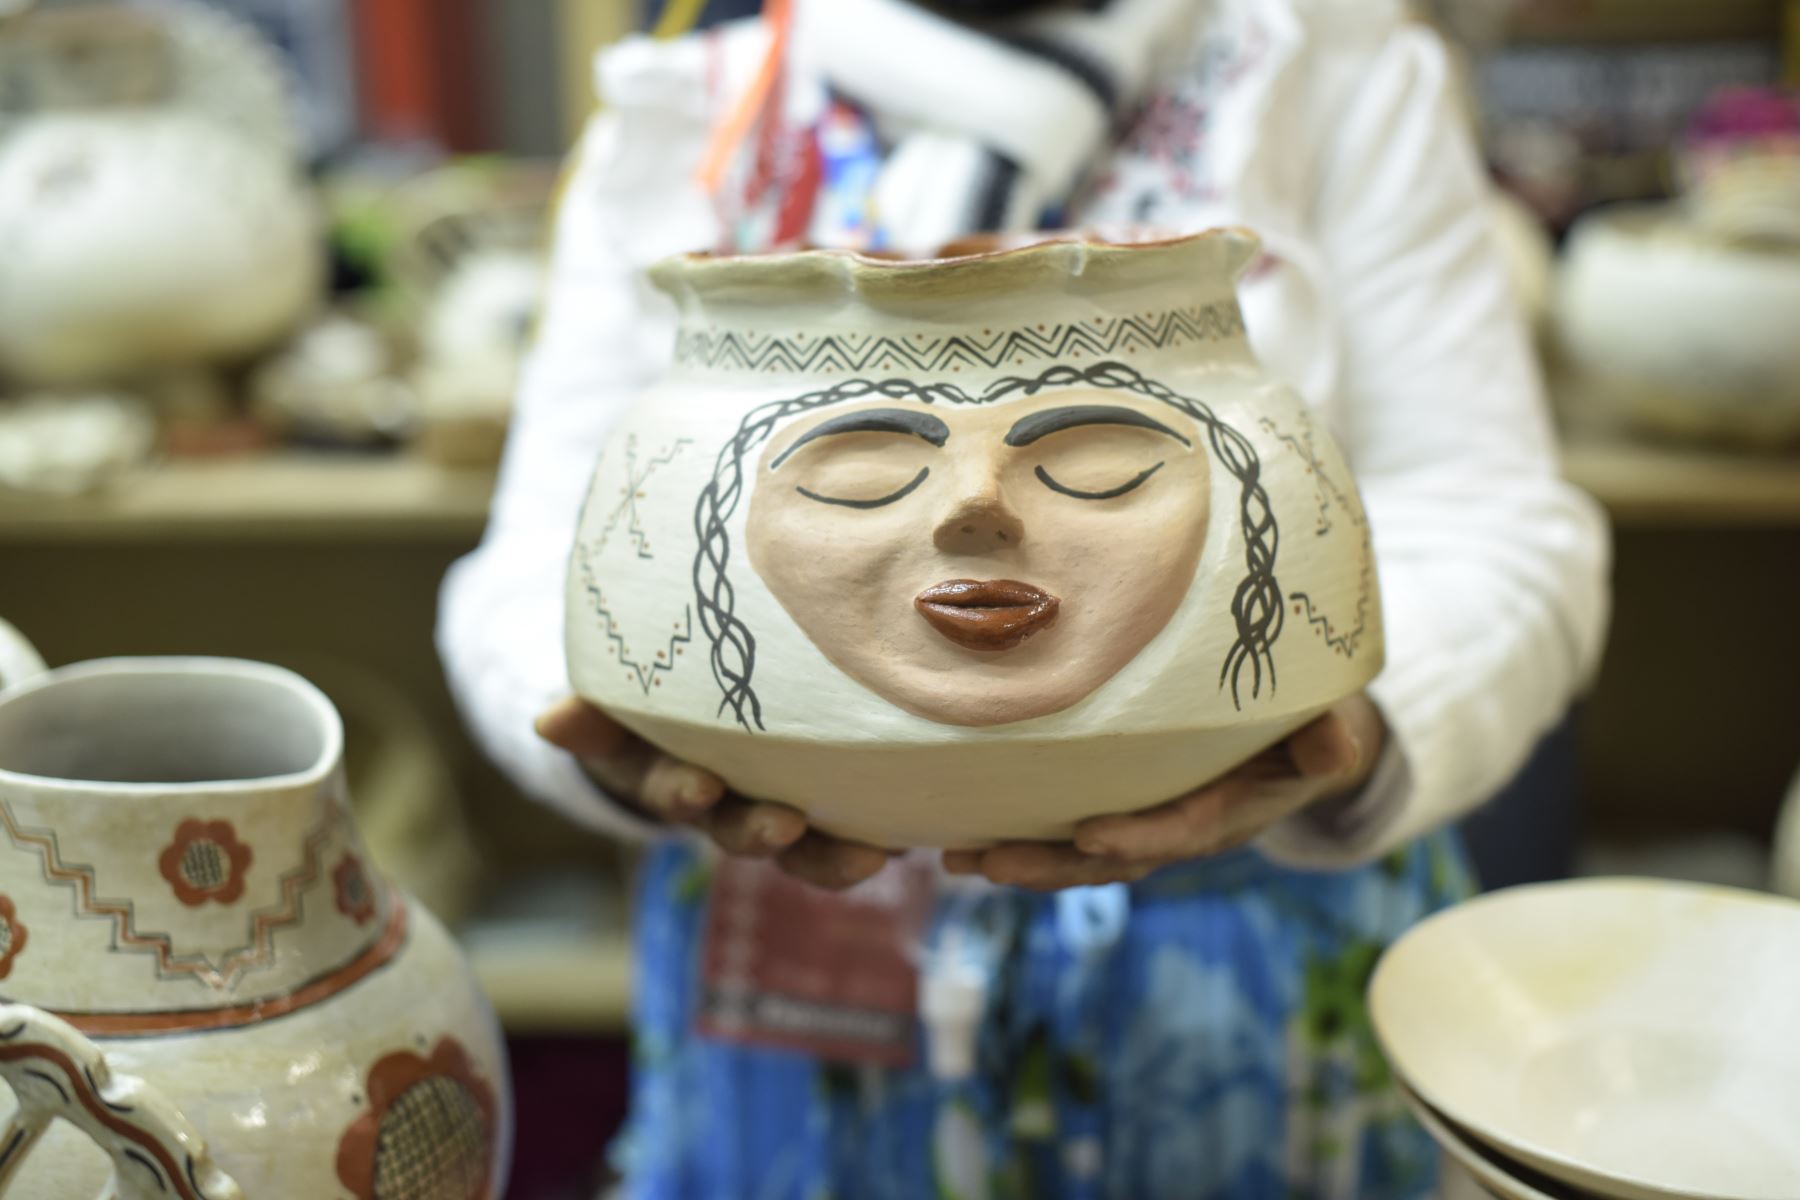 Ministerio de Cultura reunirá, desde este jueves 8, a artesanos y artistas tradicionales de todo el país en la edición de diciembre de Ruraq maki, hecho a mano.

Foto: ANDINA/Difusión